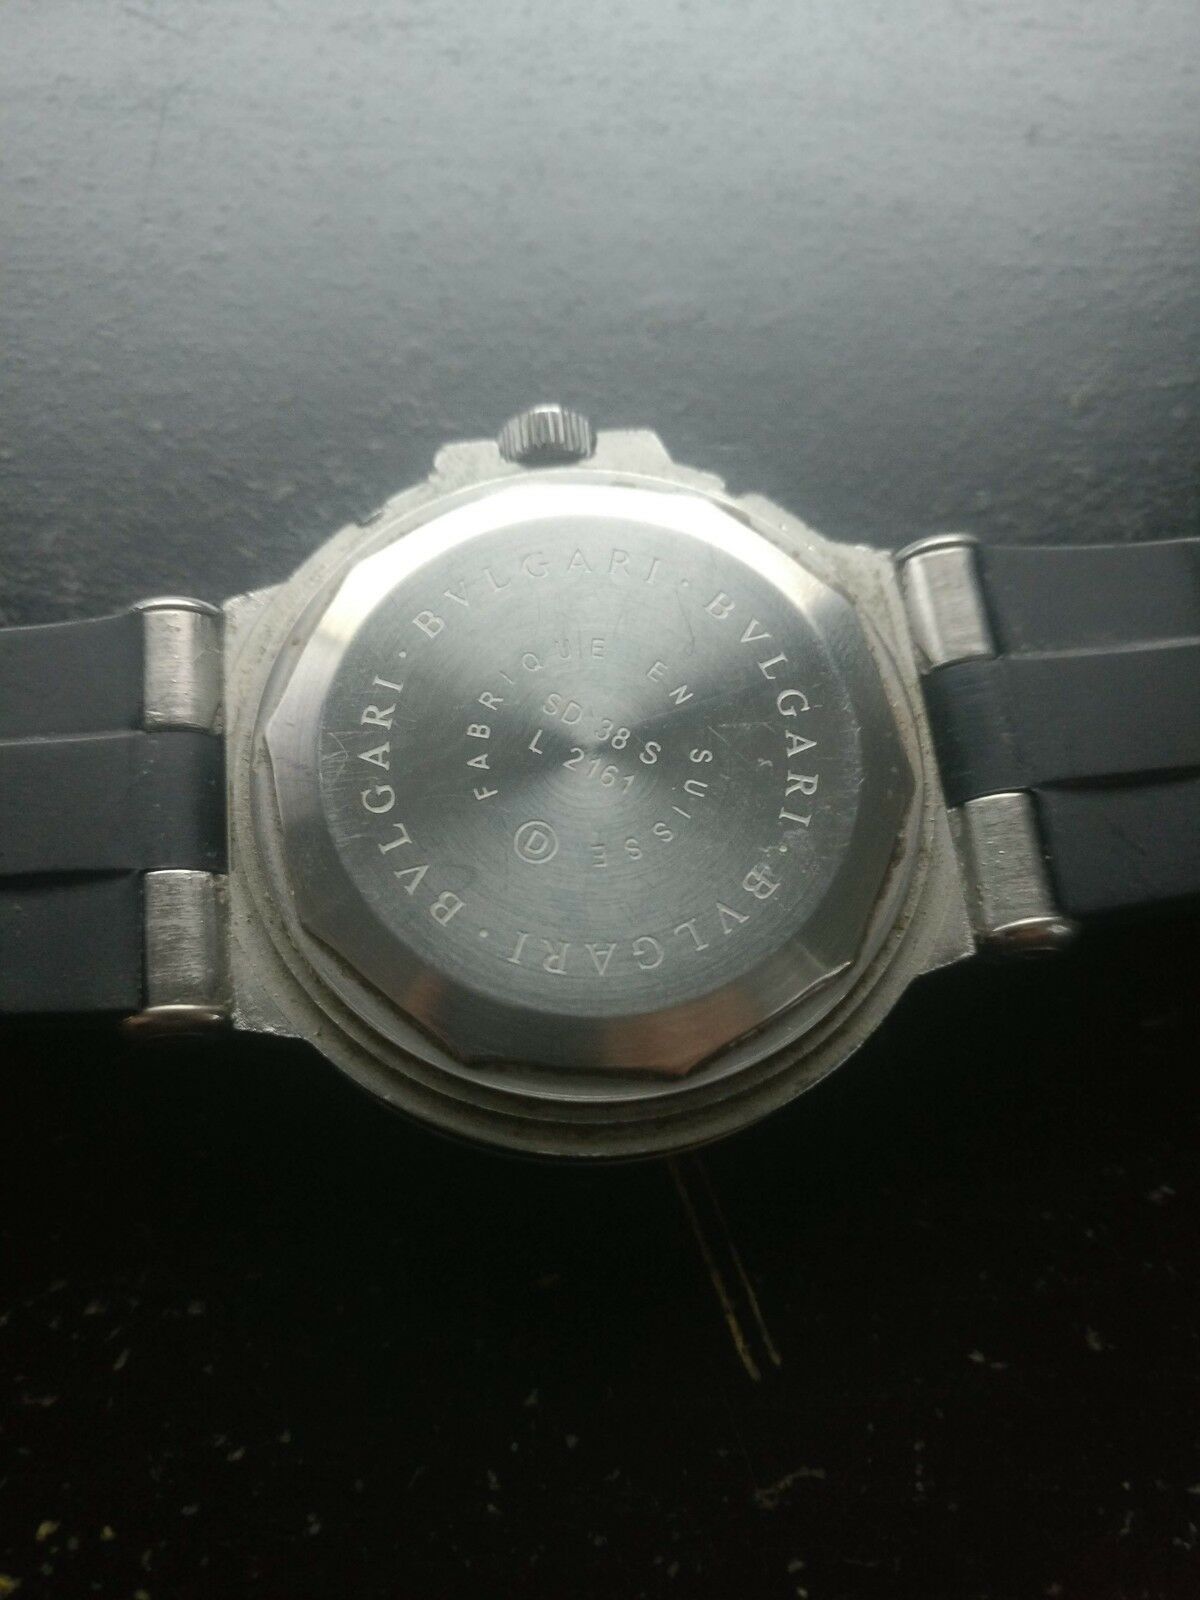 bvlgari watches sd38s l2161 price